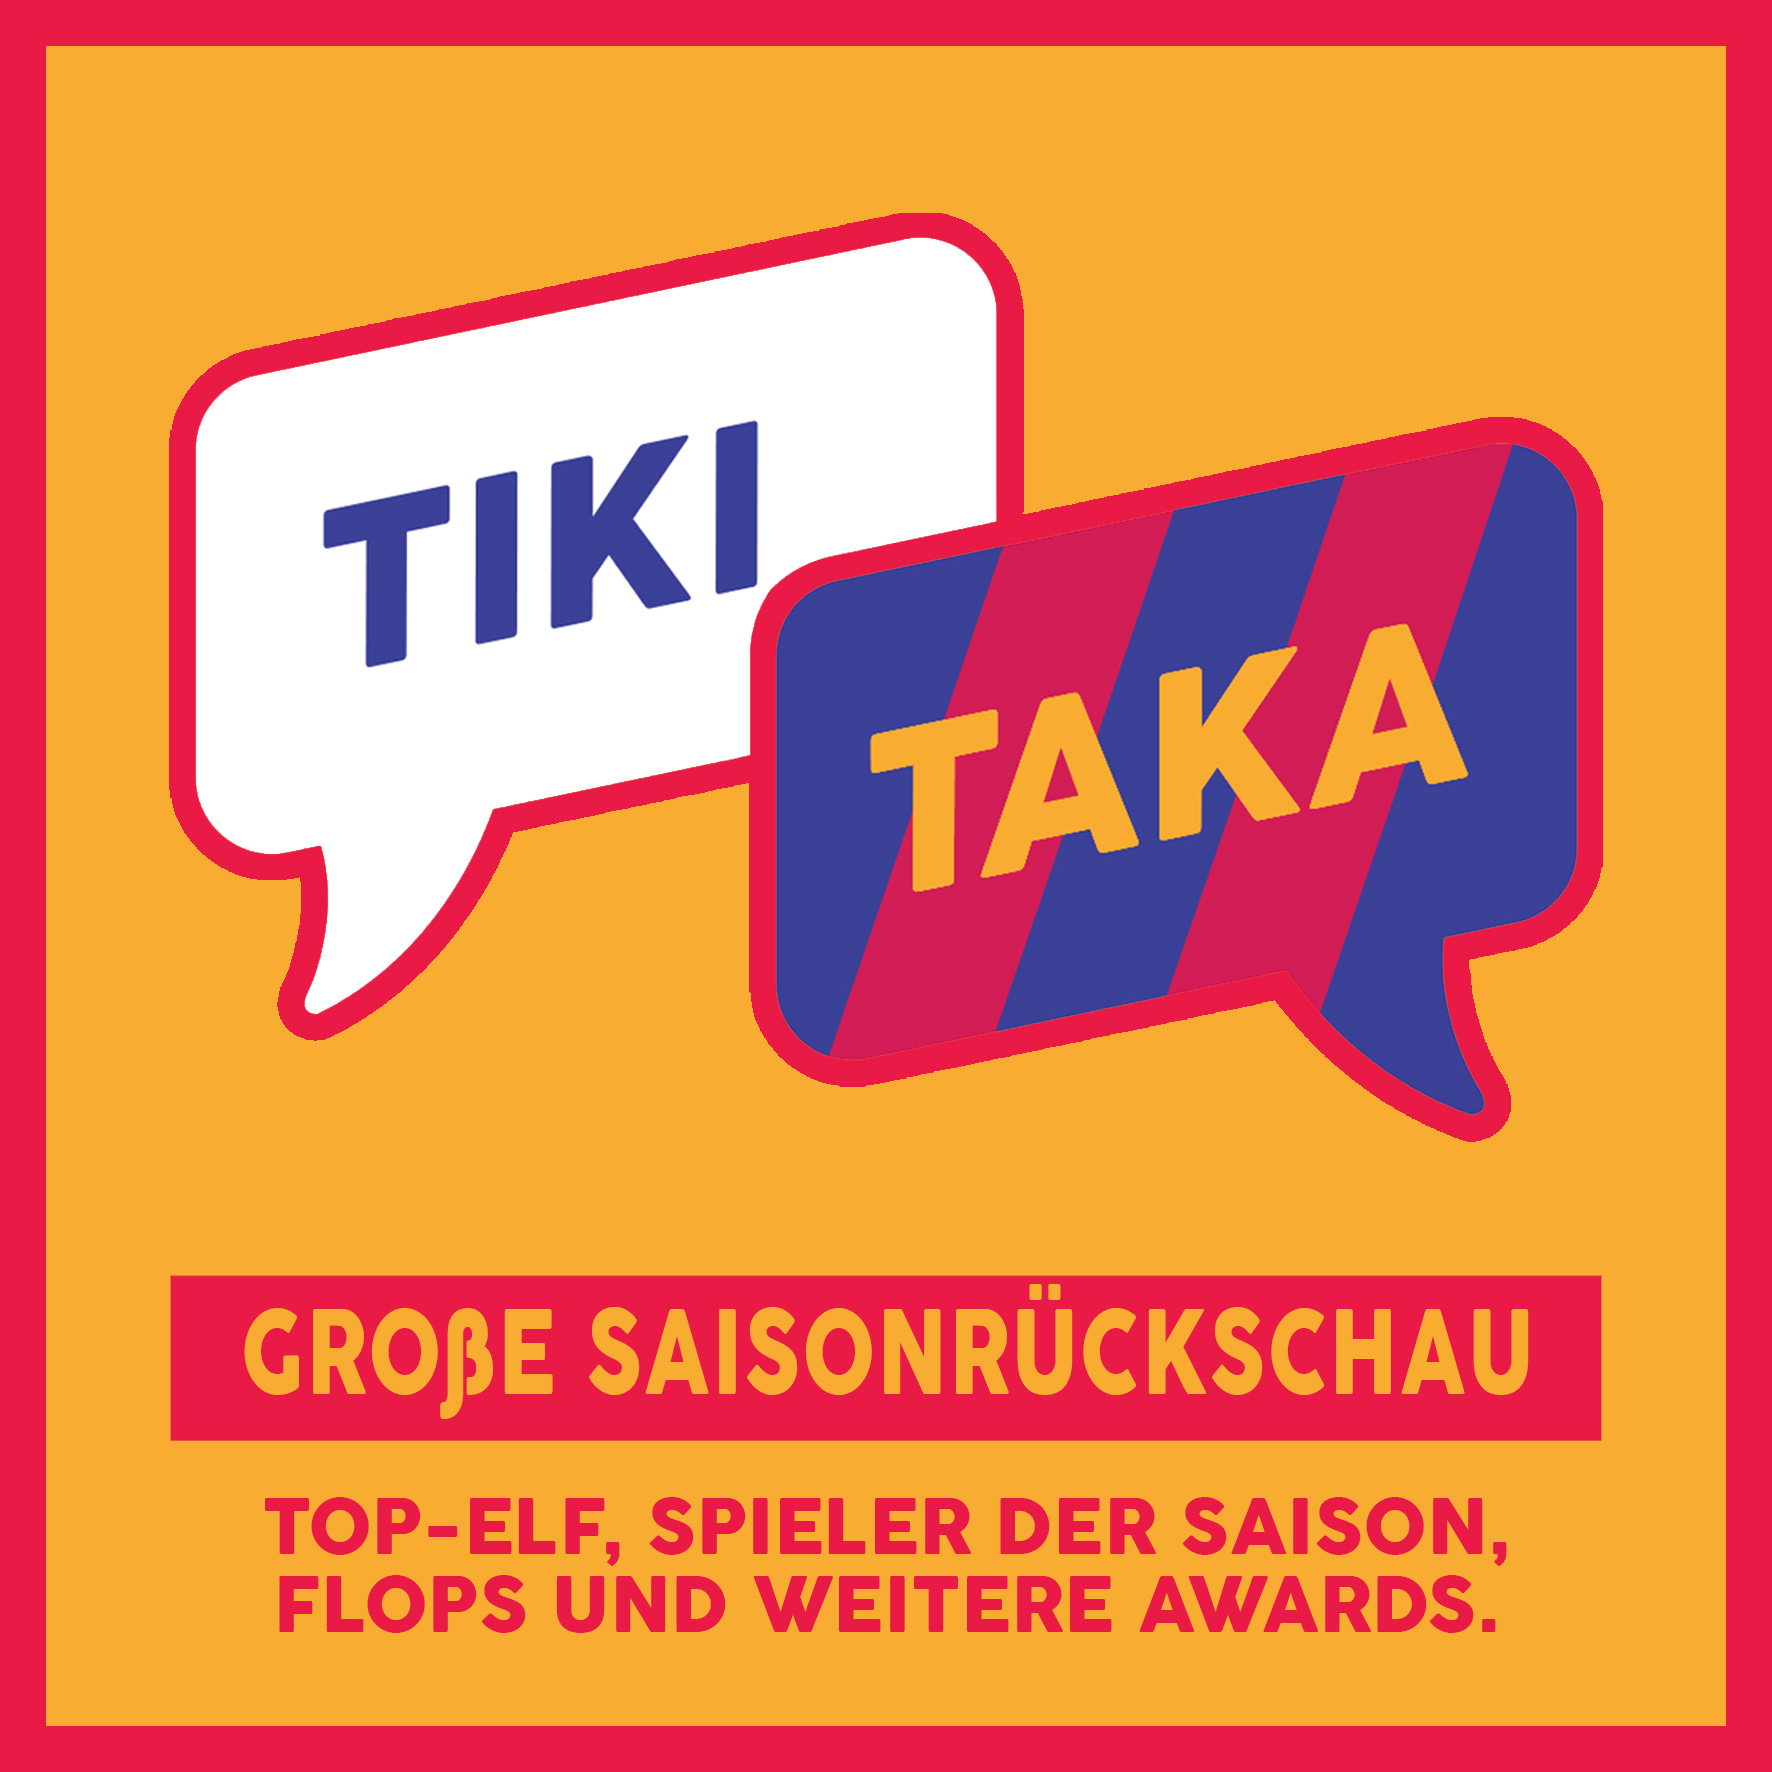 Top-Elf, Spieler der Saison und mehr: Die TIKI TAKA-Awards